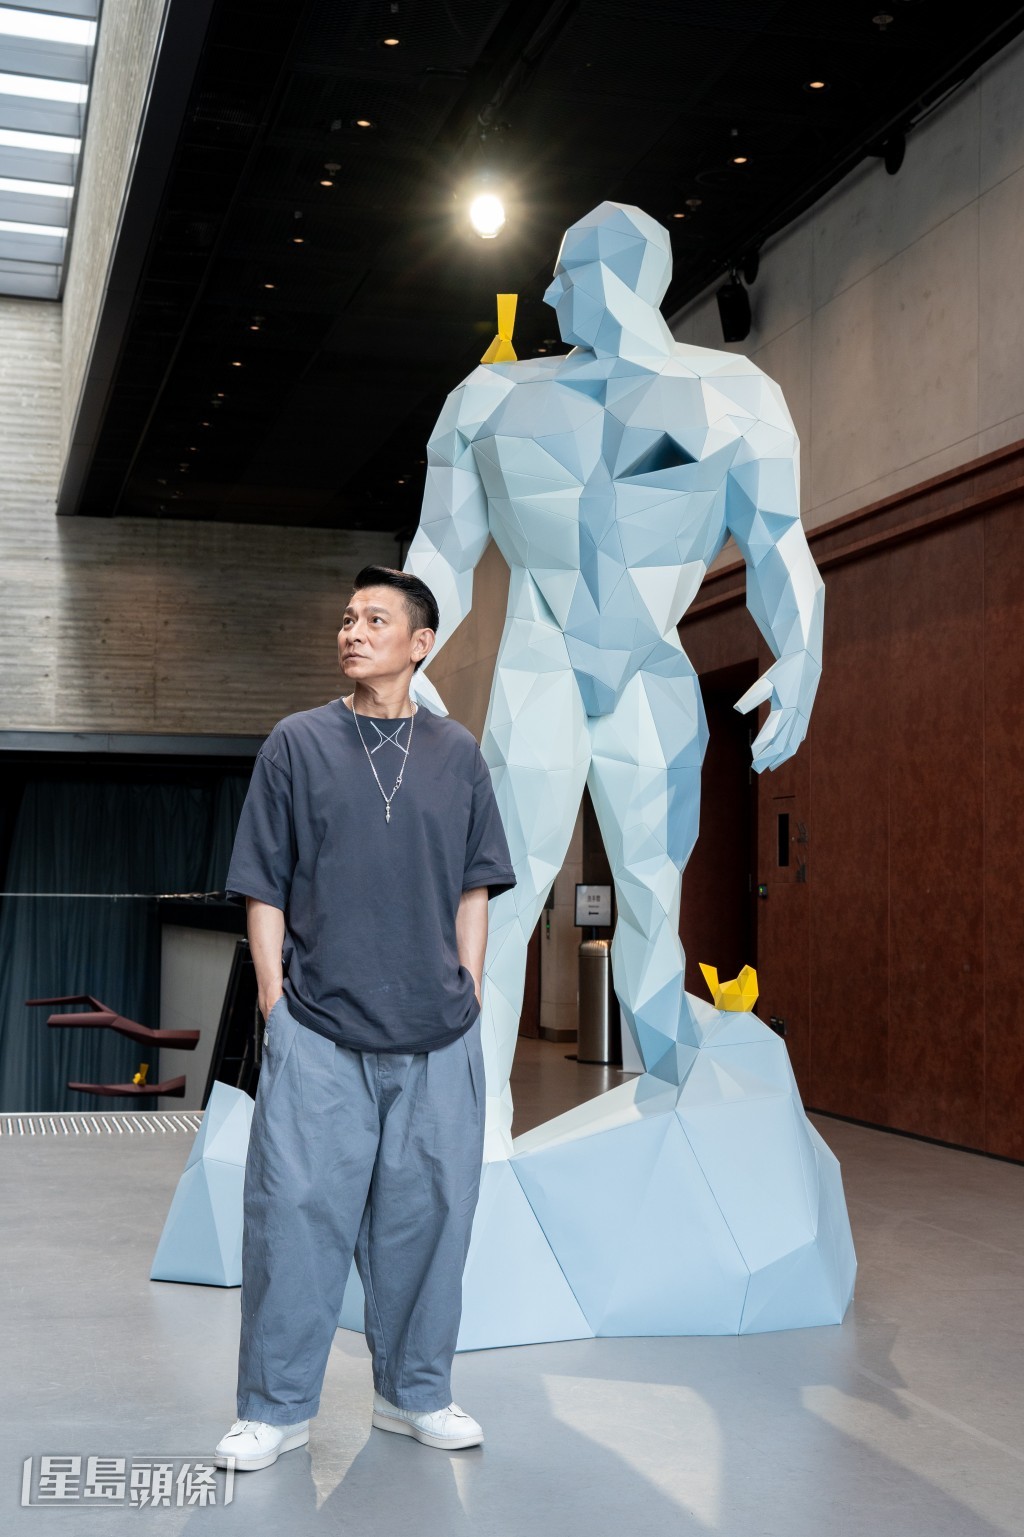 劉德華於8月25日至9月9日假西九文化區藝術公園自由空間舉行「1/X劉德華的藝術空間」。